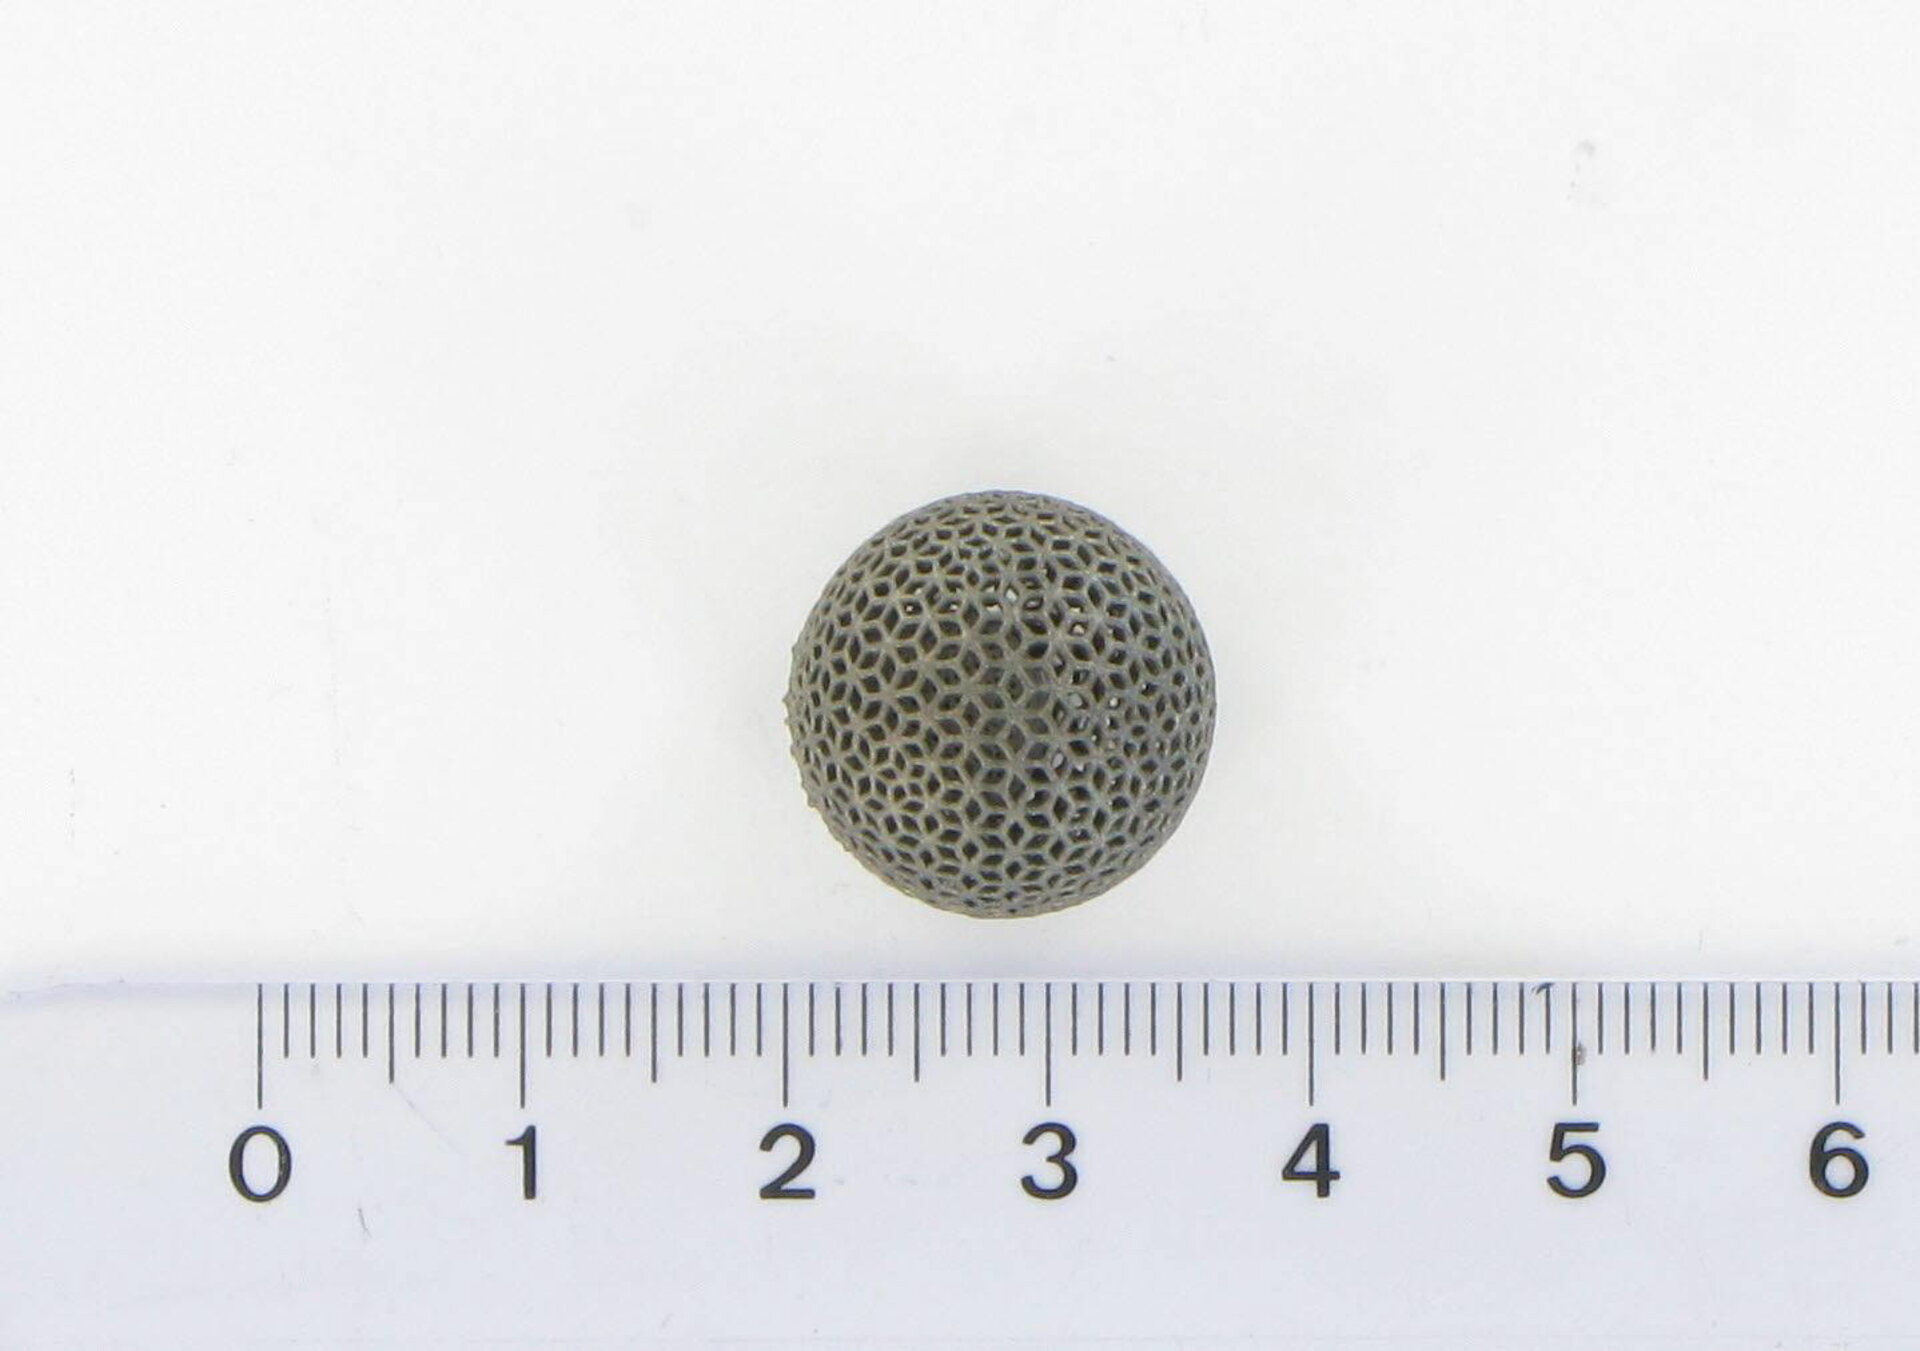 3D-printed titanium lattice ball